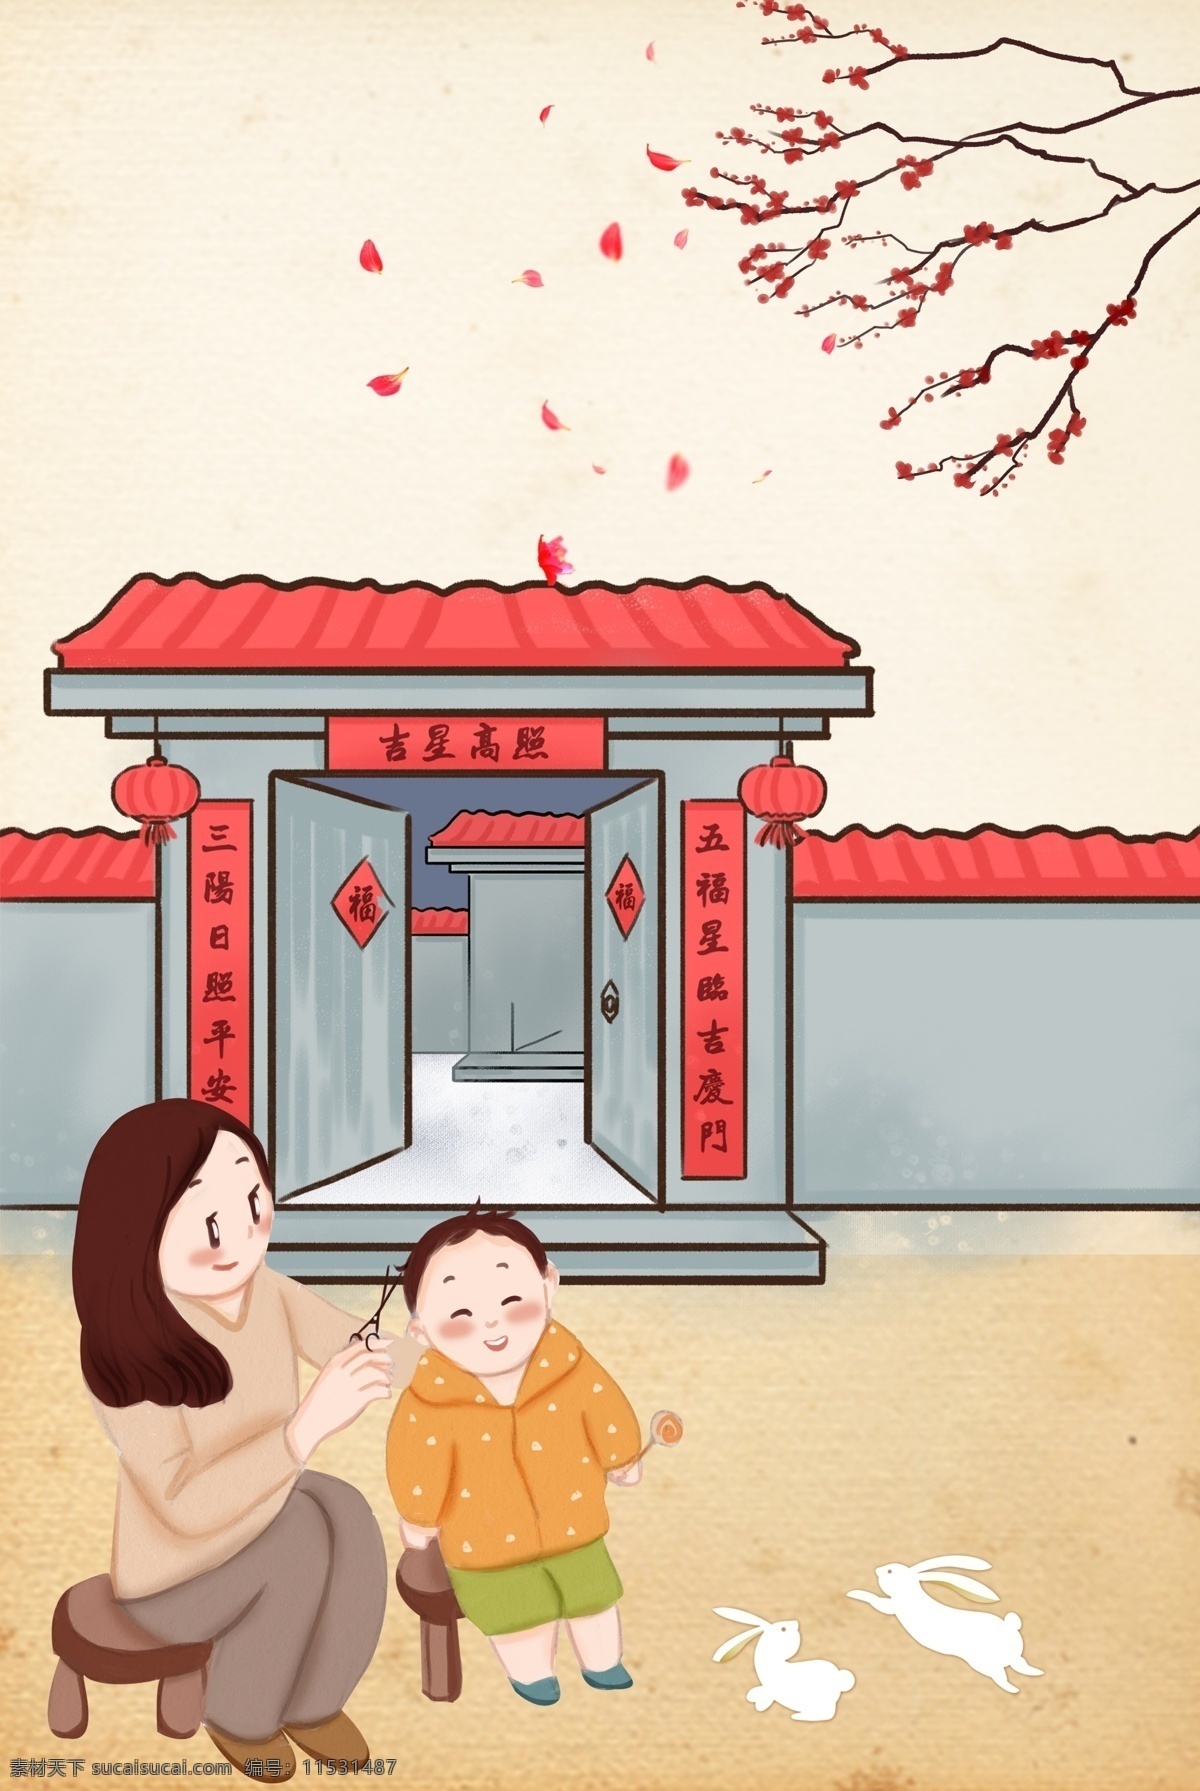 手绘 中国 传统节日 龙 抬头 背景 中式 中国风 传统 二月二 龙抬头 节日 剪发 卡通 扁平 简约